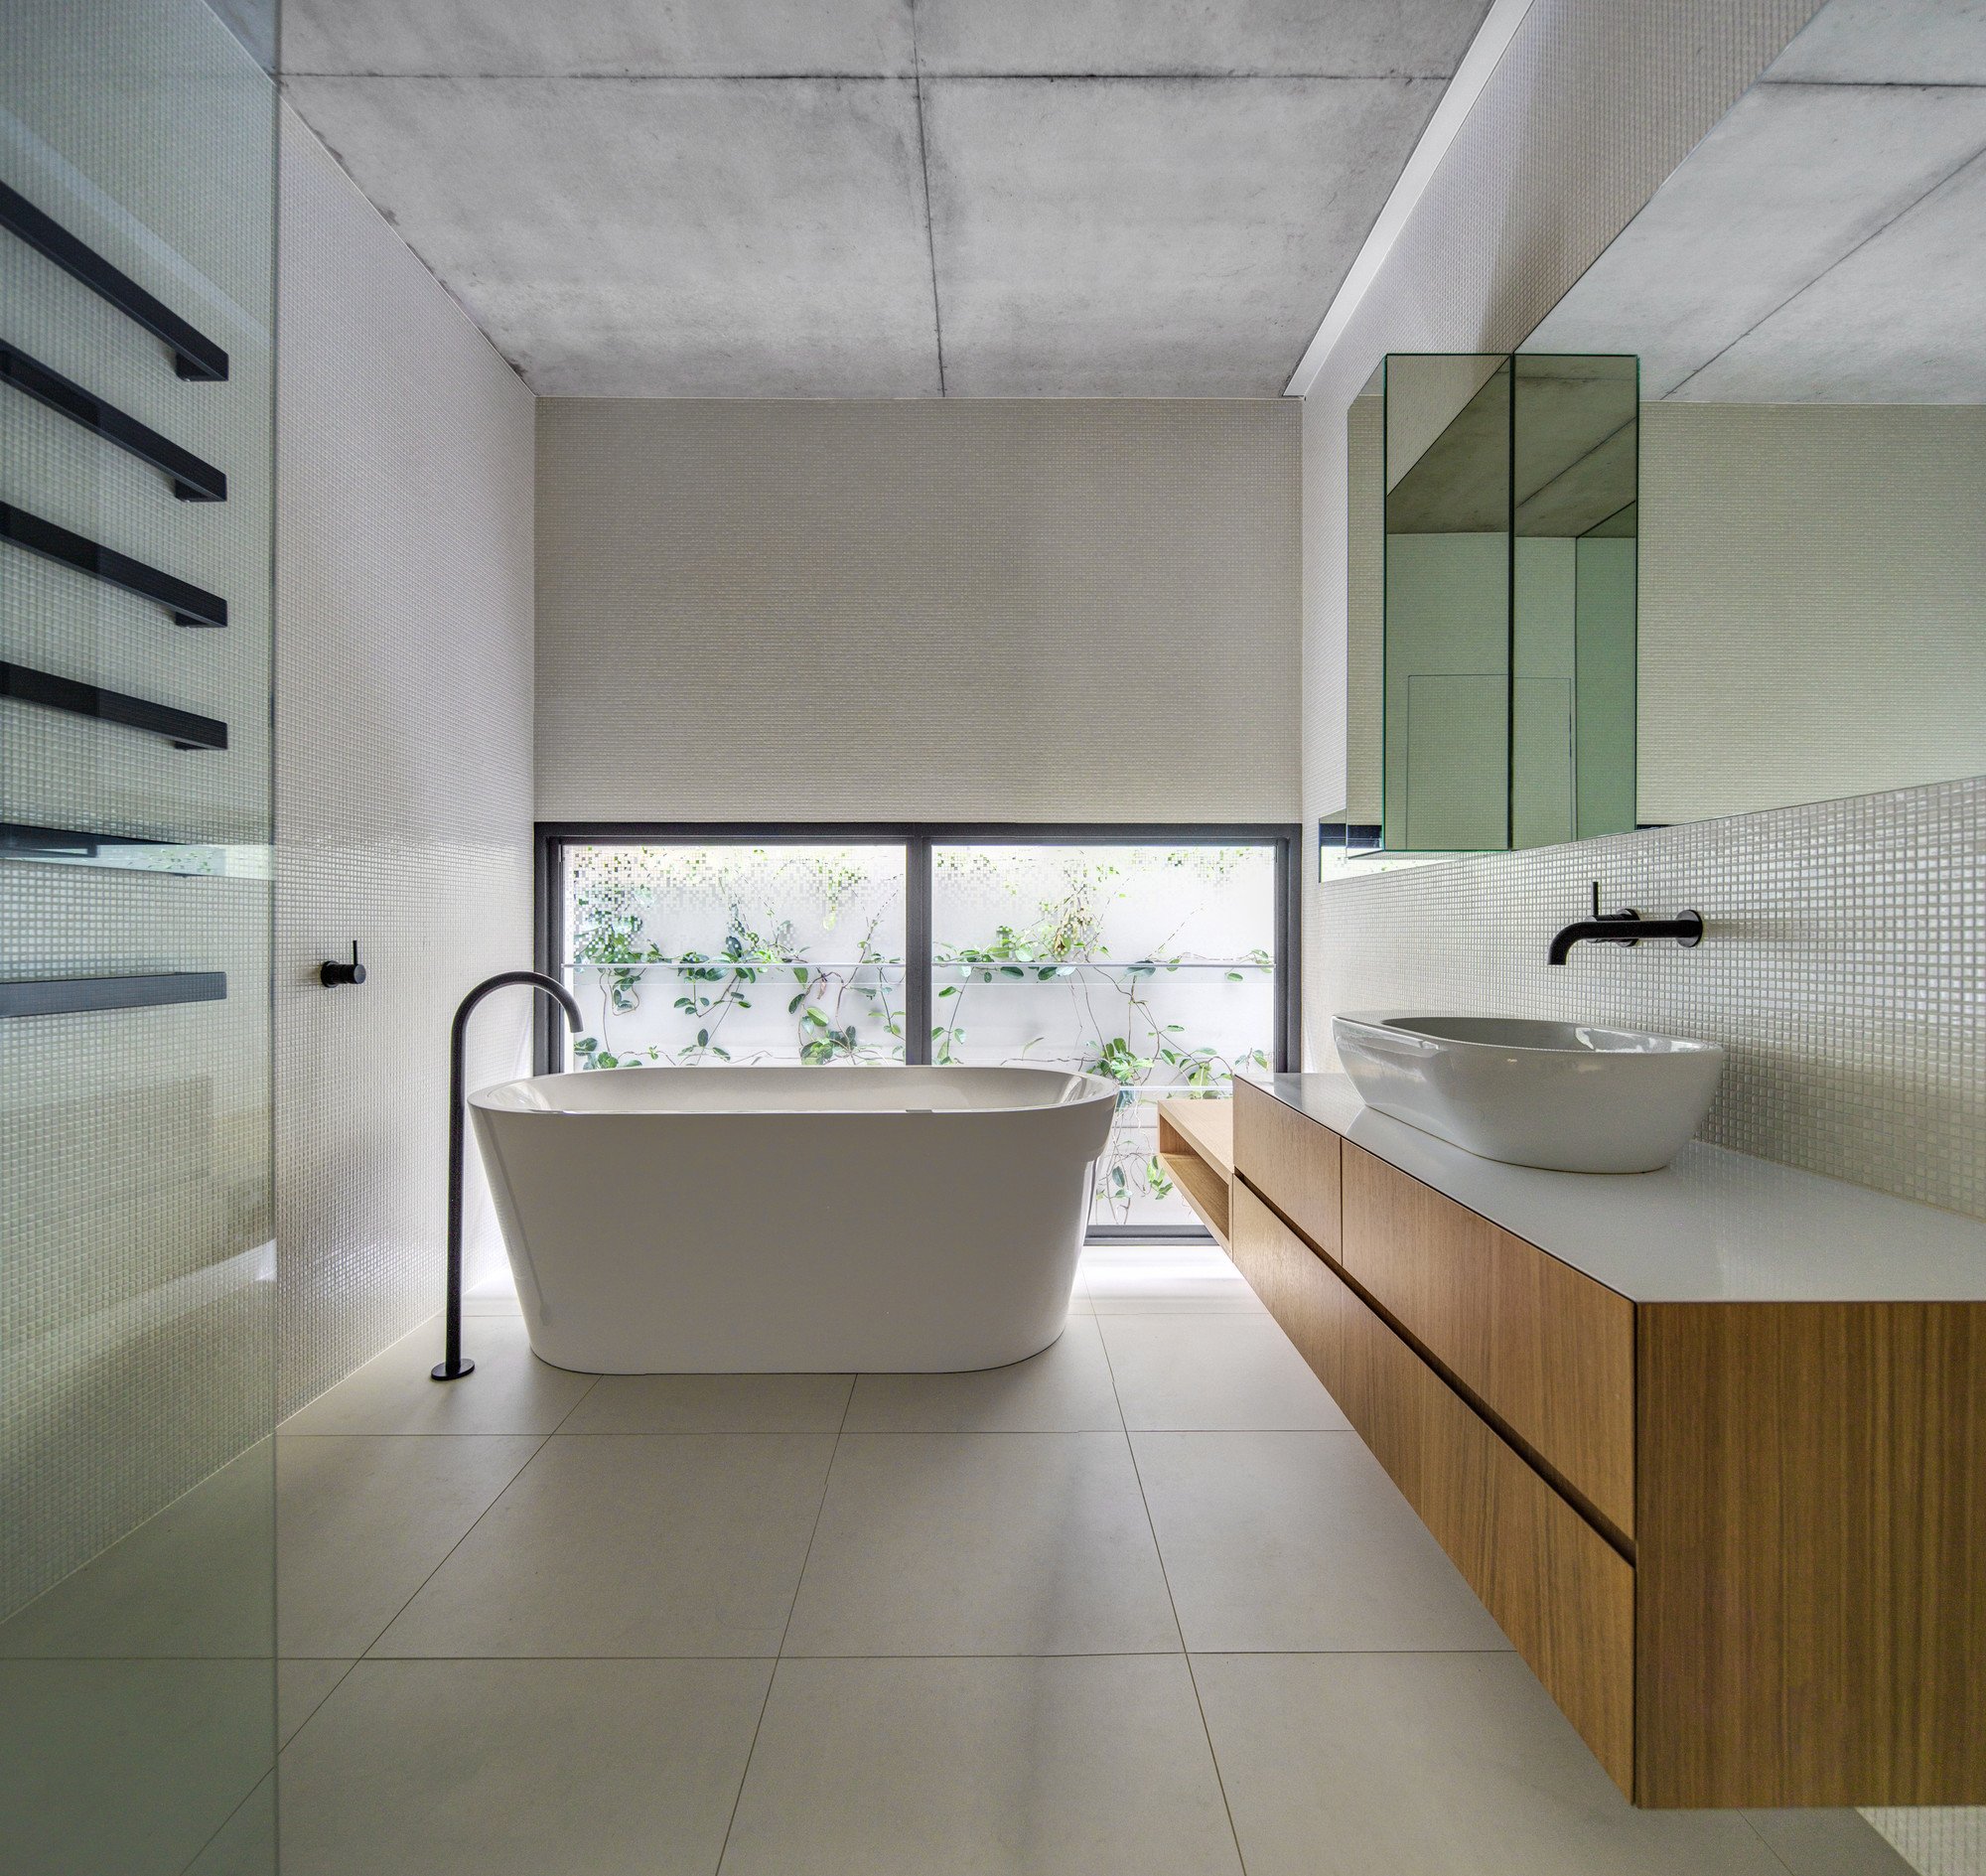 Ванная в стиле минимализм - 45 фото в интерьере